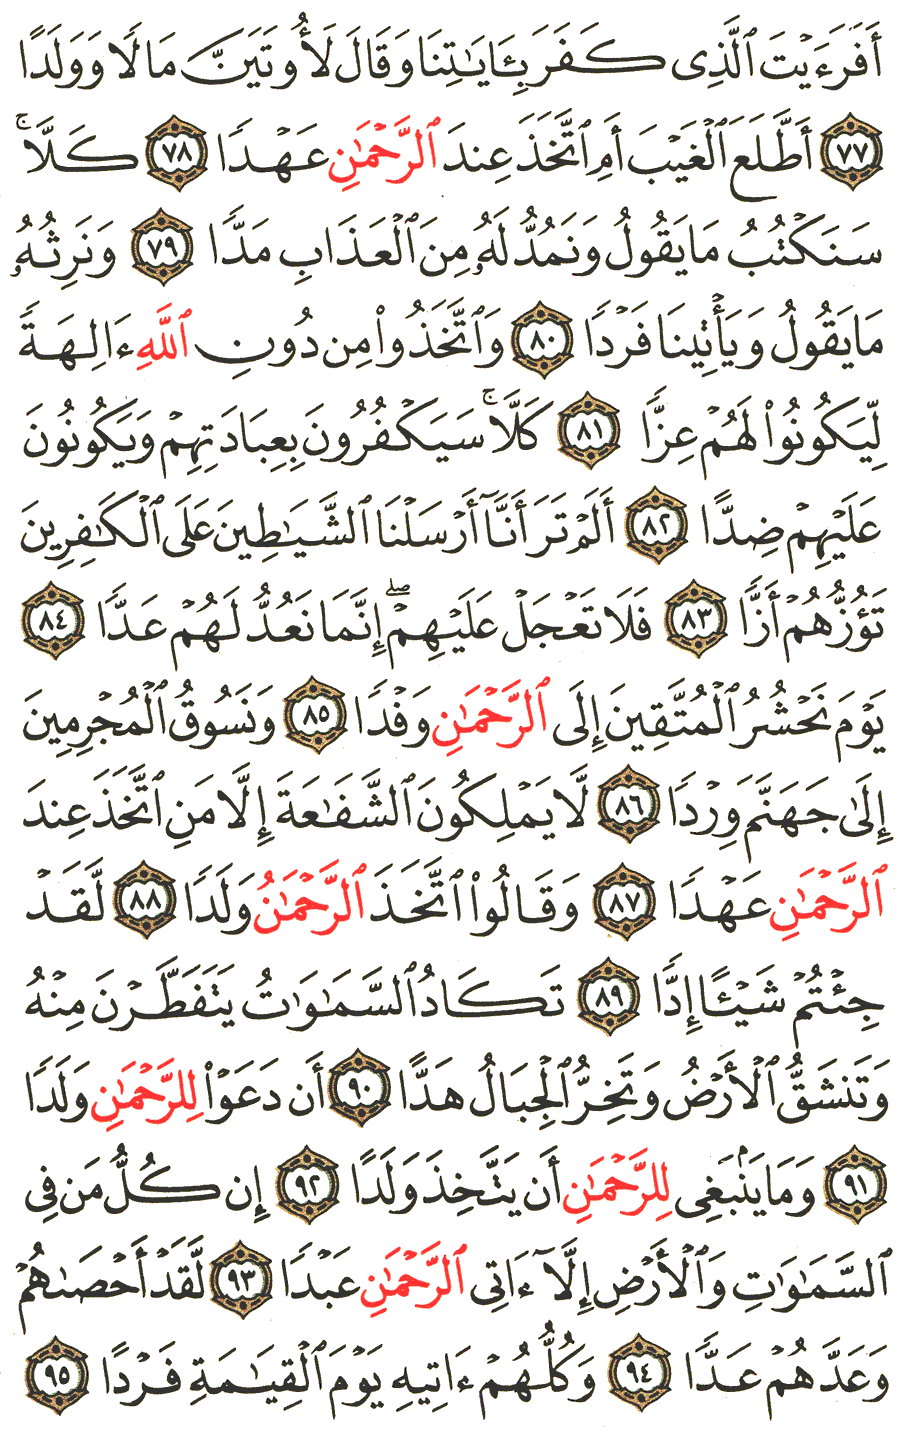 الصفحة رقم 311  من القرآن الكريم مكتوبة من المصحف